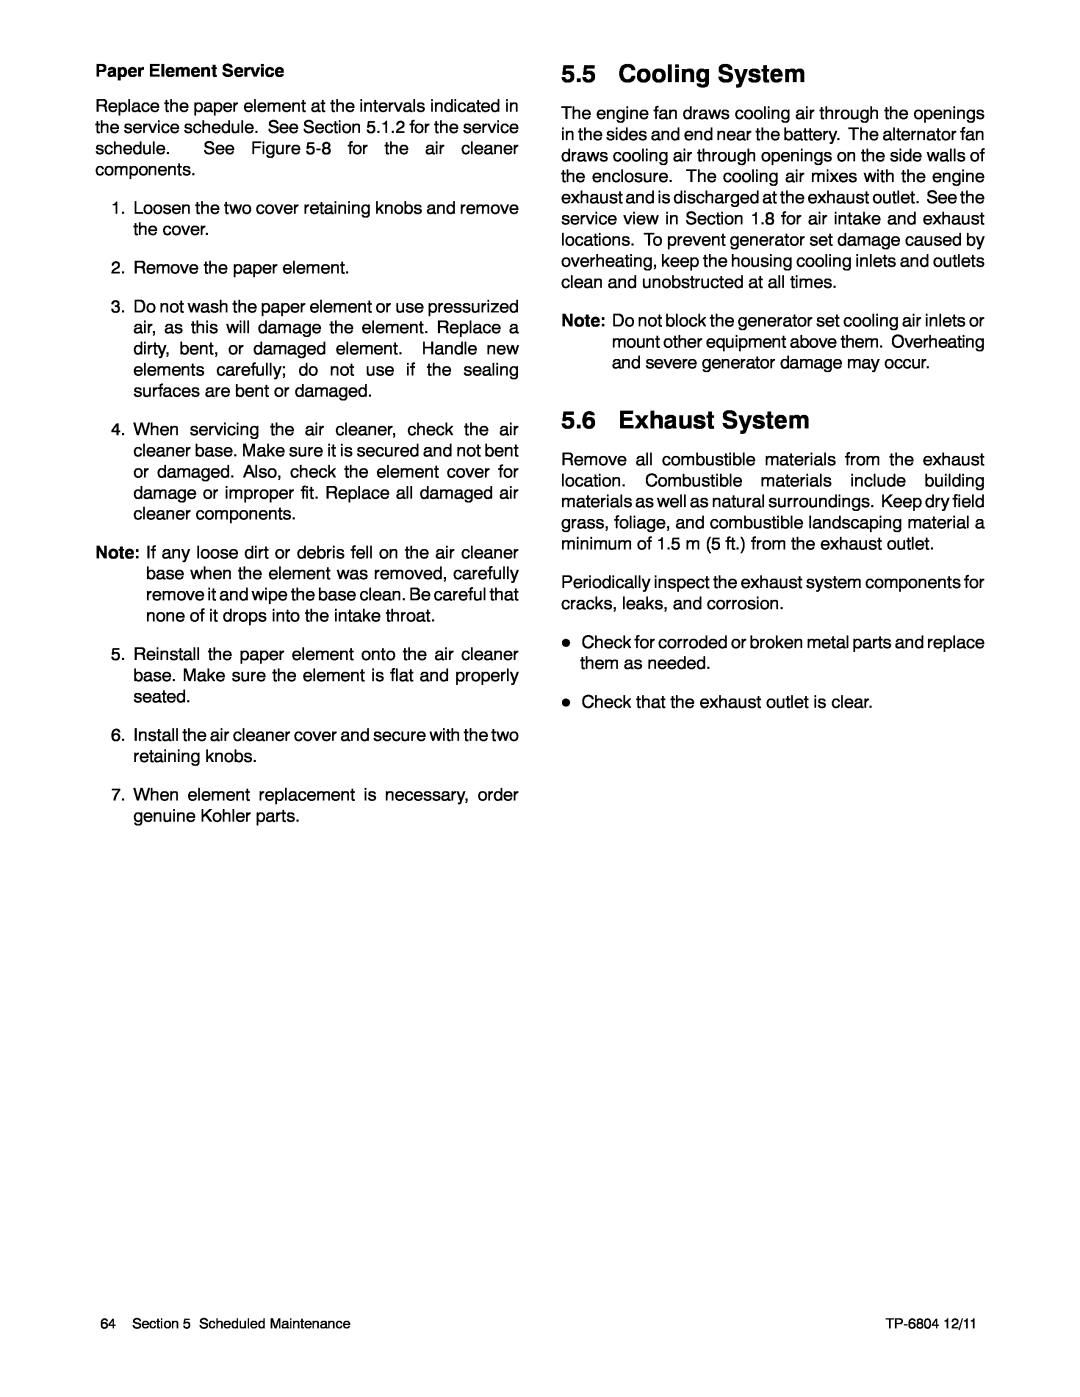 Kohler 14/20RESAL manual Cooling System, Exhaust System 